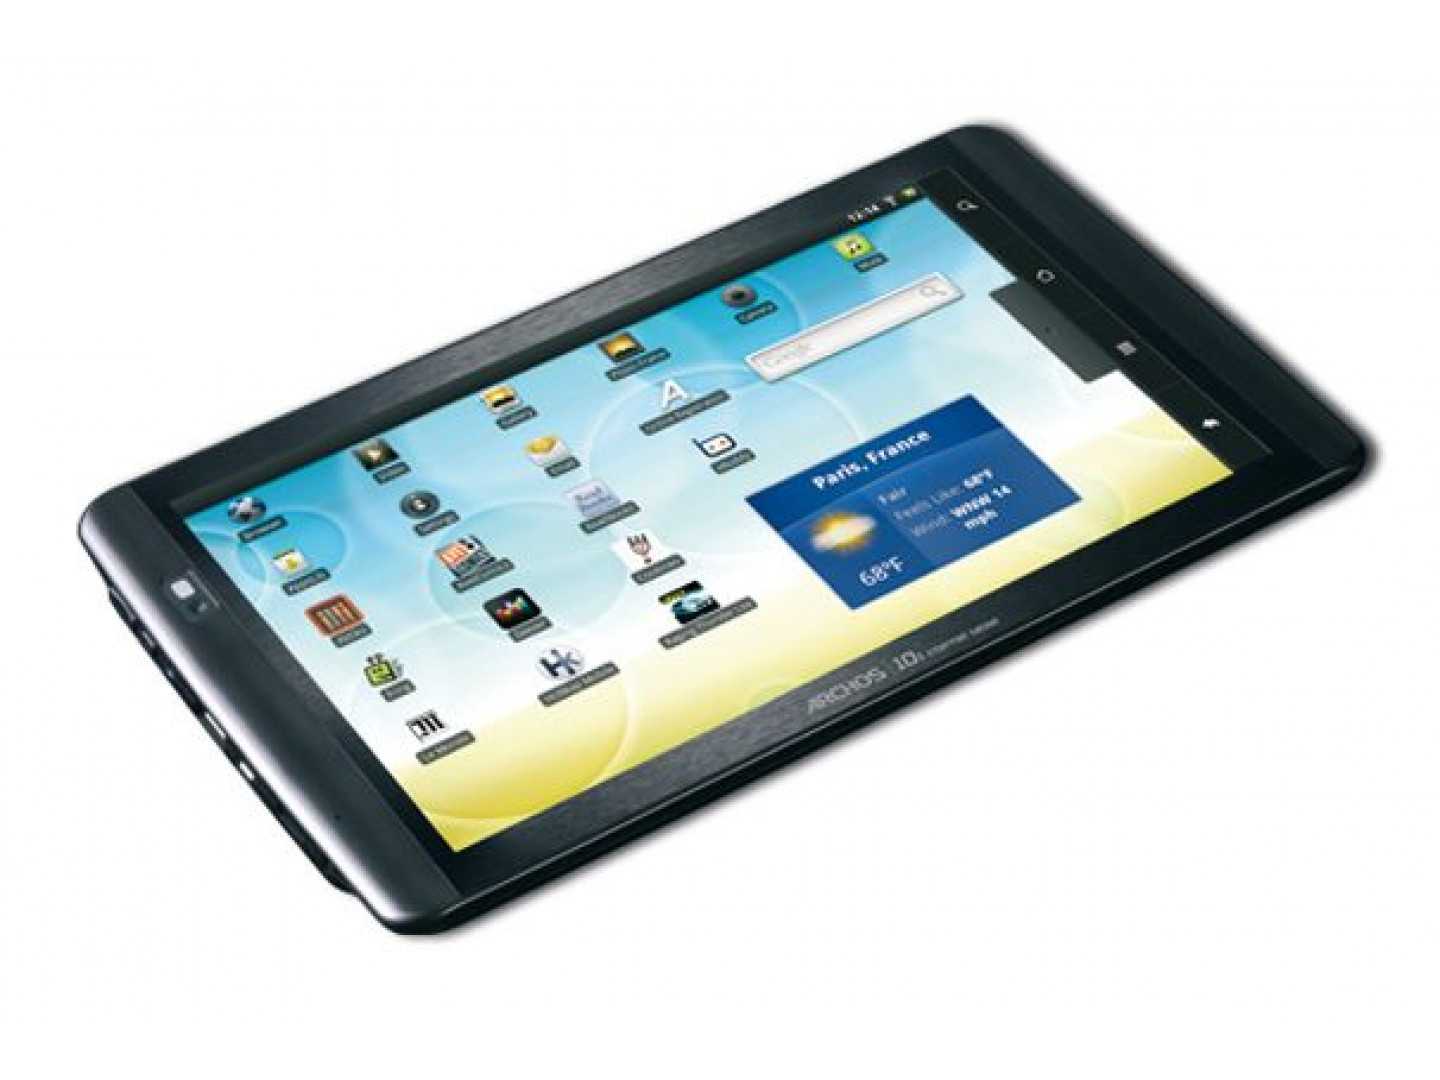 Archos 28 internet tablet 4gb купить по акционной цене , отзывы и обзоры.